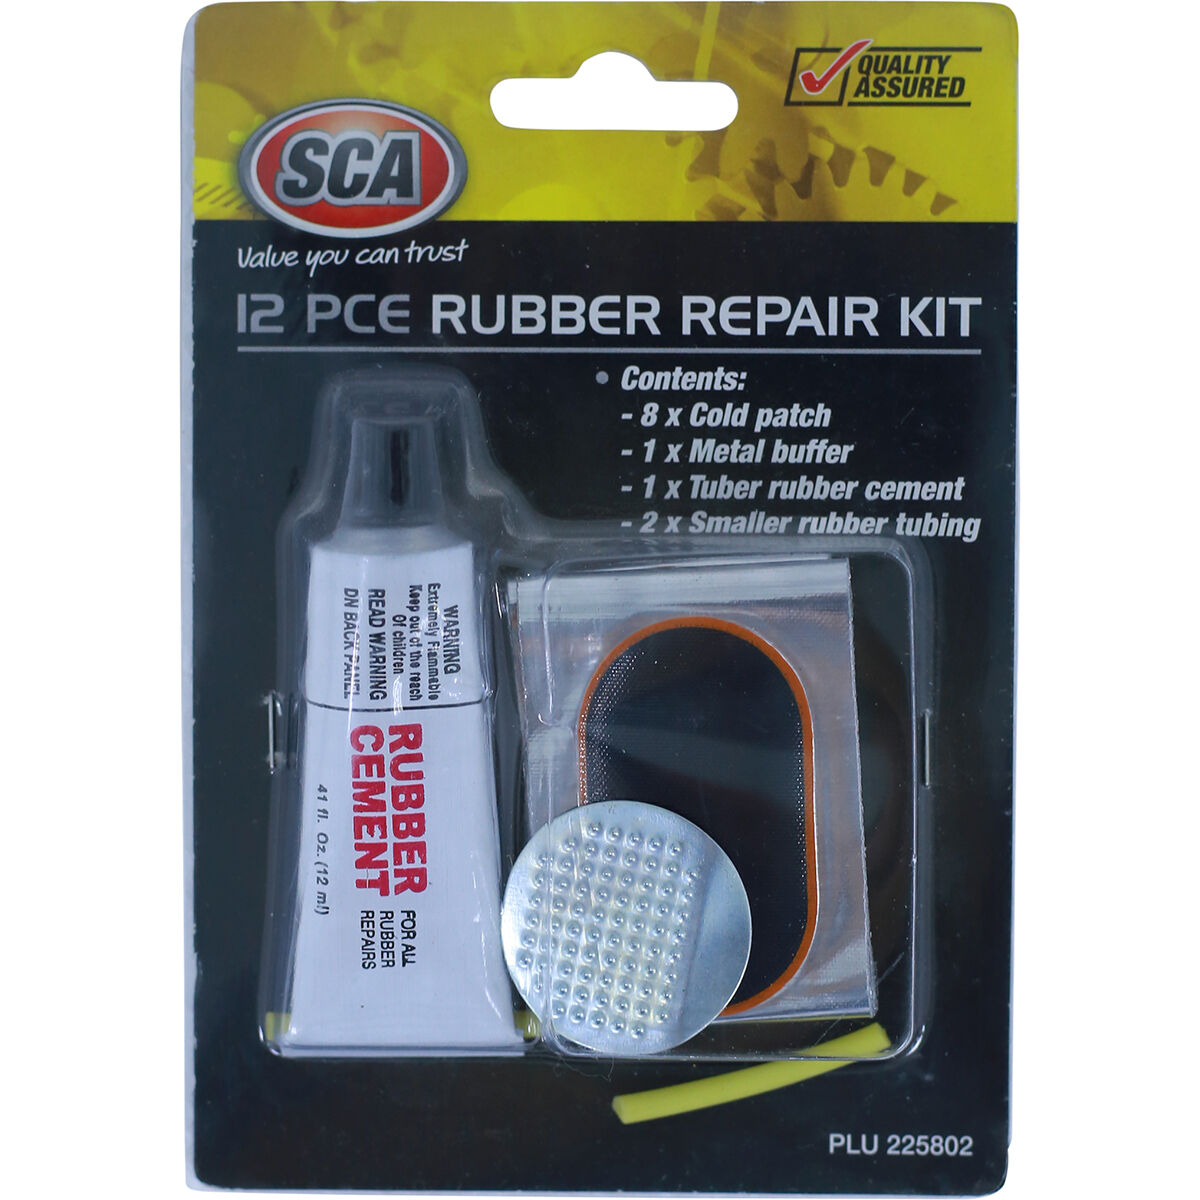 SCA Rubber Repair Kit - 12 Piece | Supercheap Auto